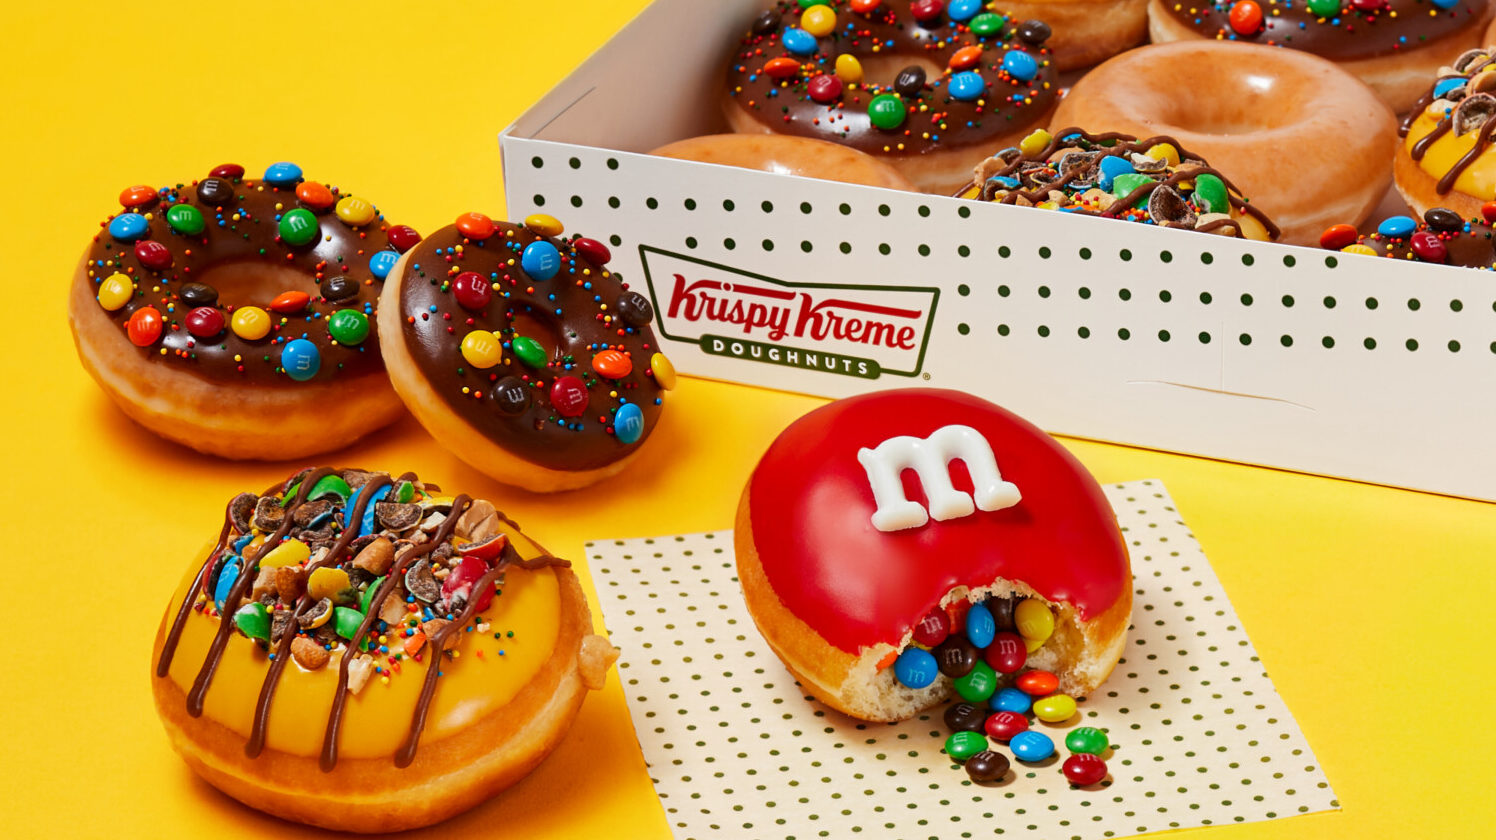 Krispy Kreme's M&M's donuts